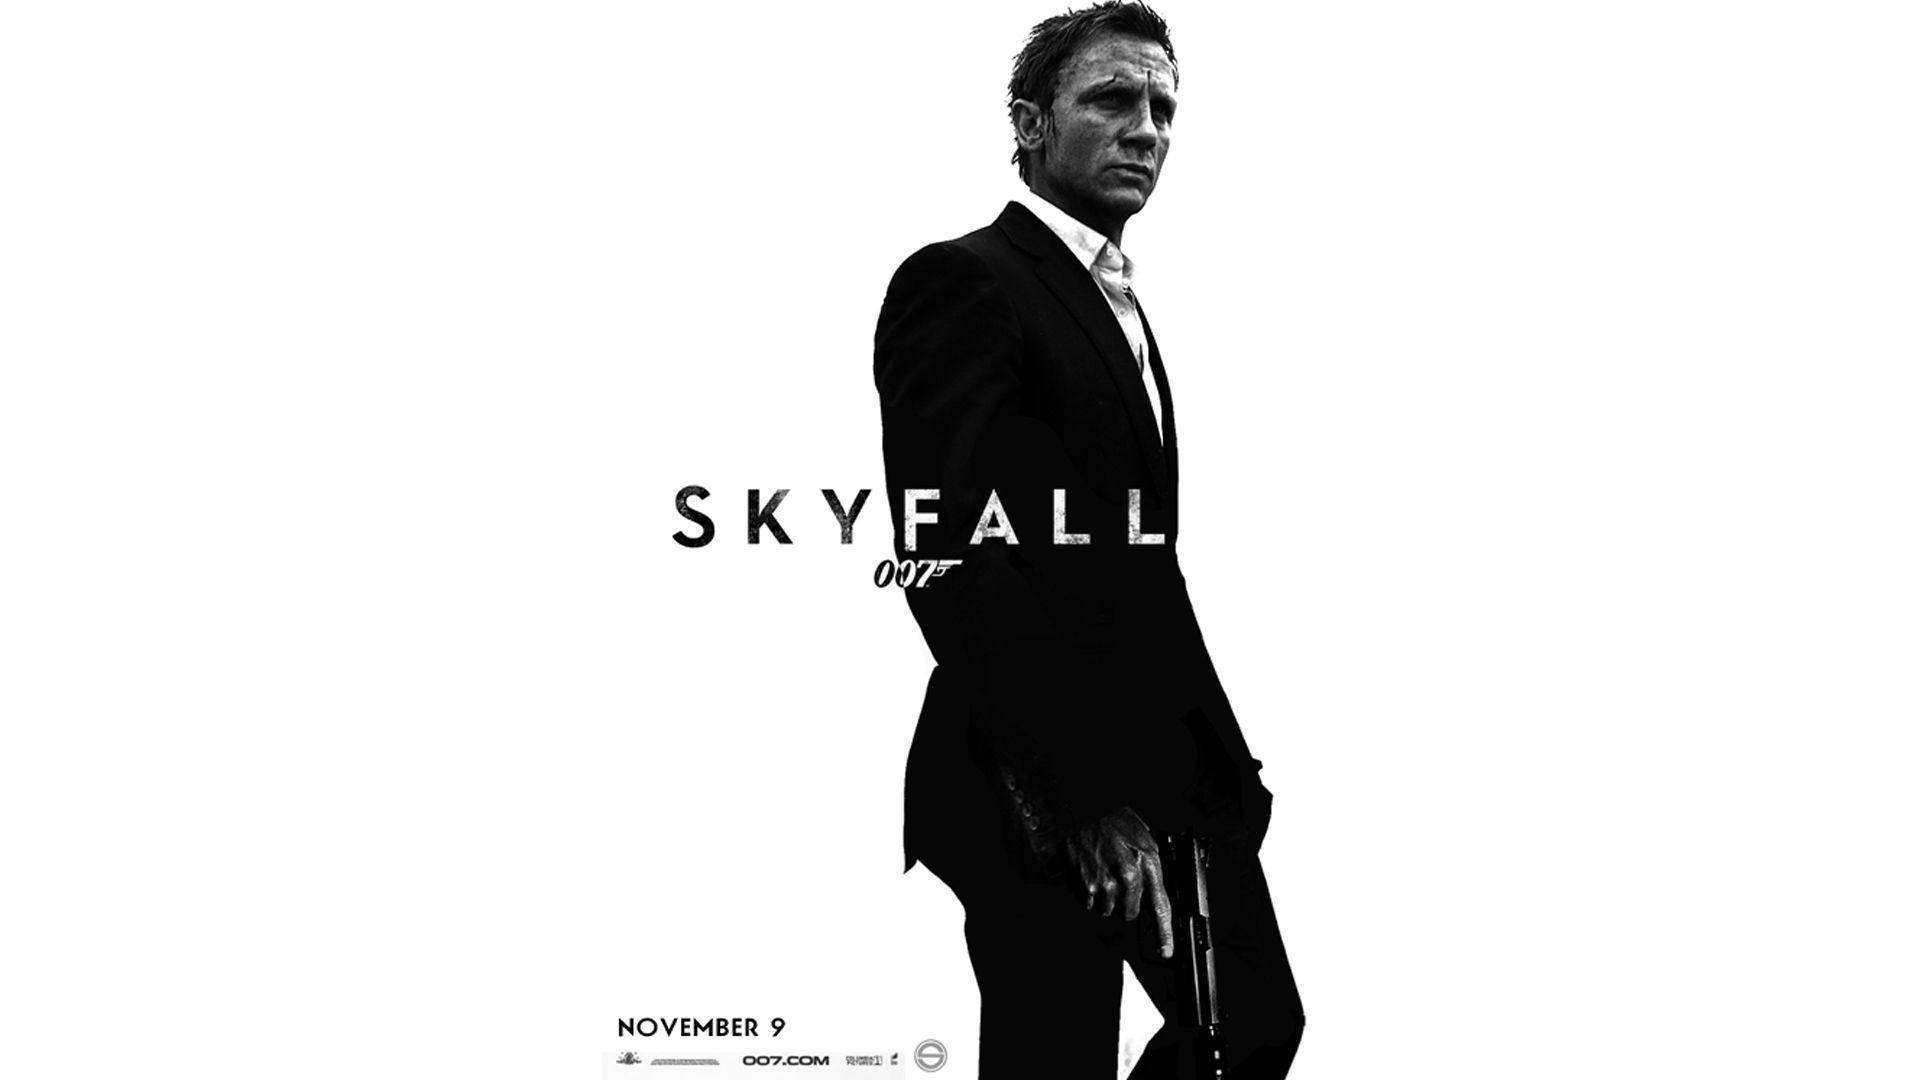 James Bond Skyfall Movie Poster Background